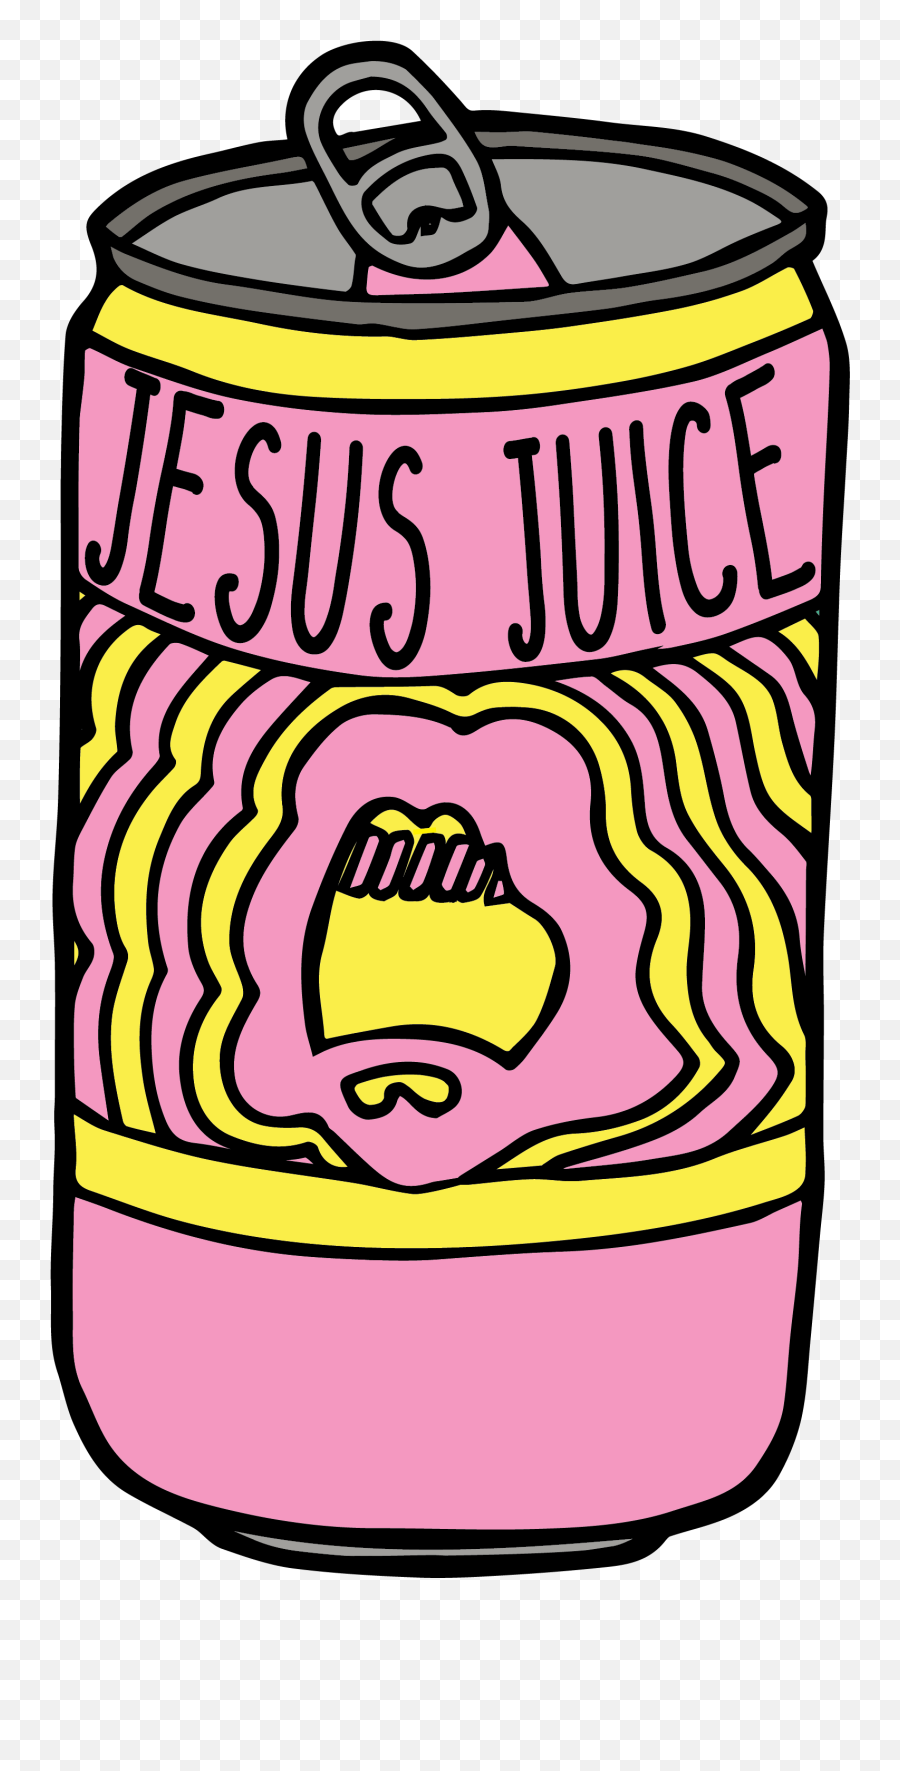 Jess Mays - Logo Design Jesus Juice Clothing Emoji,Clothing Logo Design